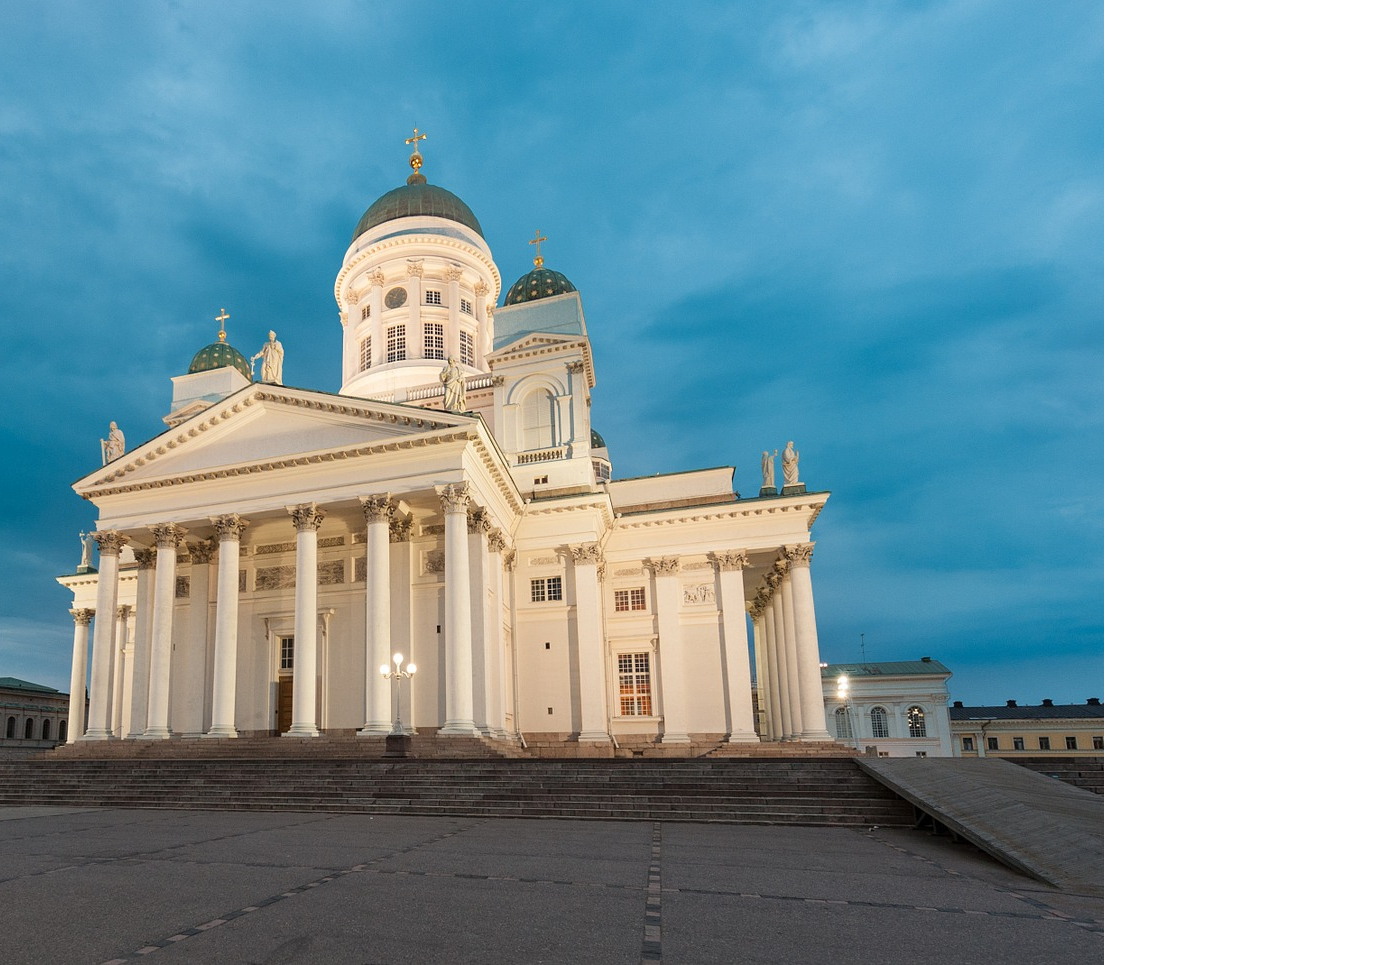 Circuito capitales bálticas: Estocolmo y Helsinki en grupo en hoteles 5*